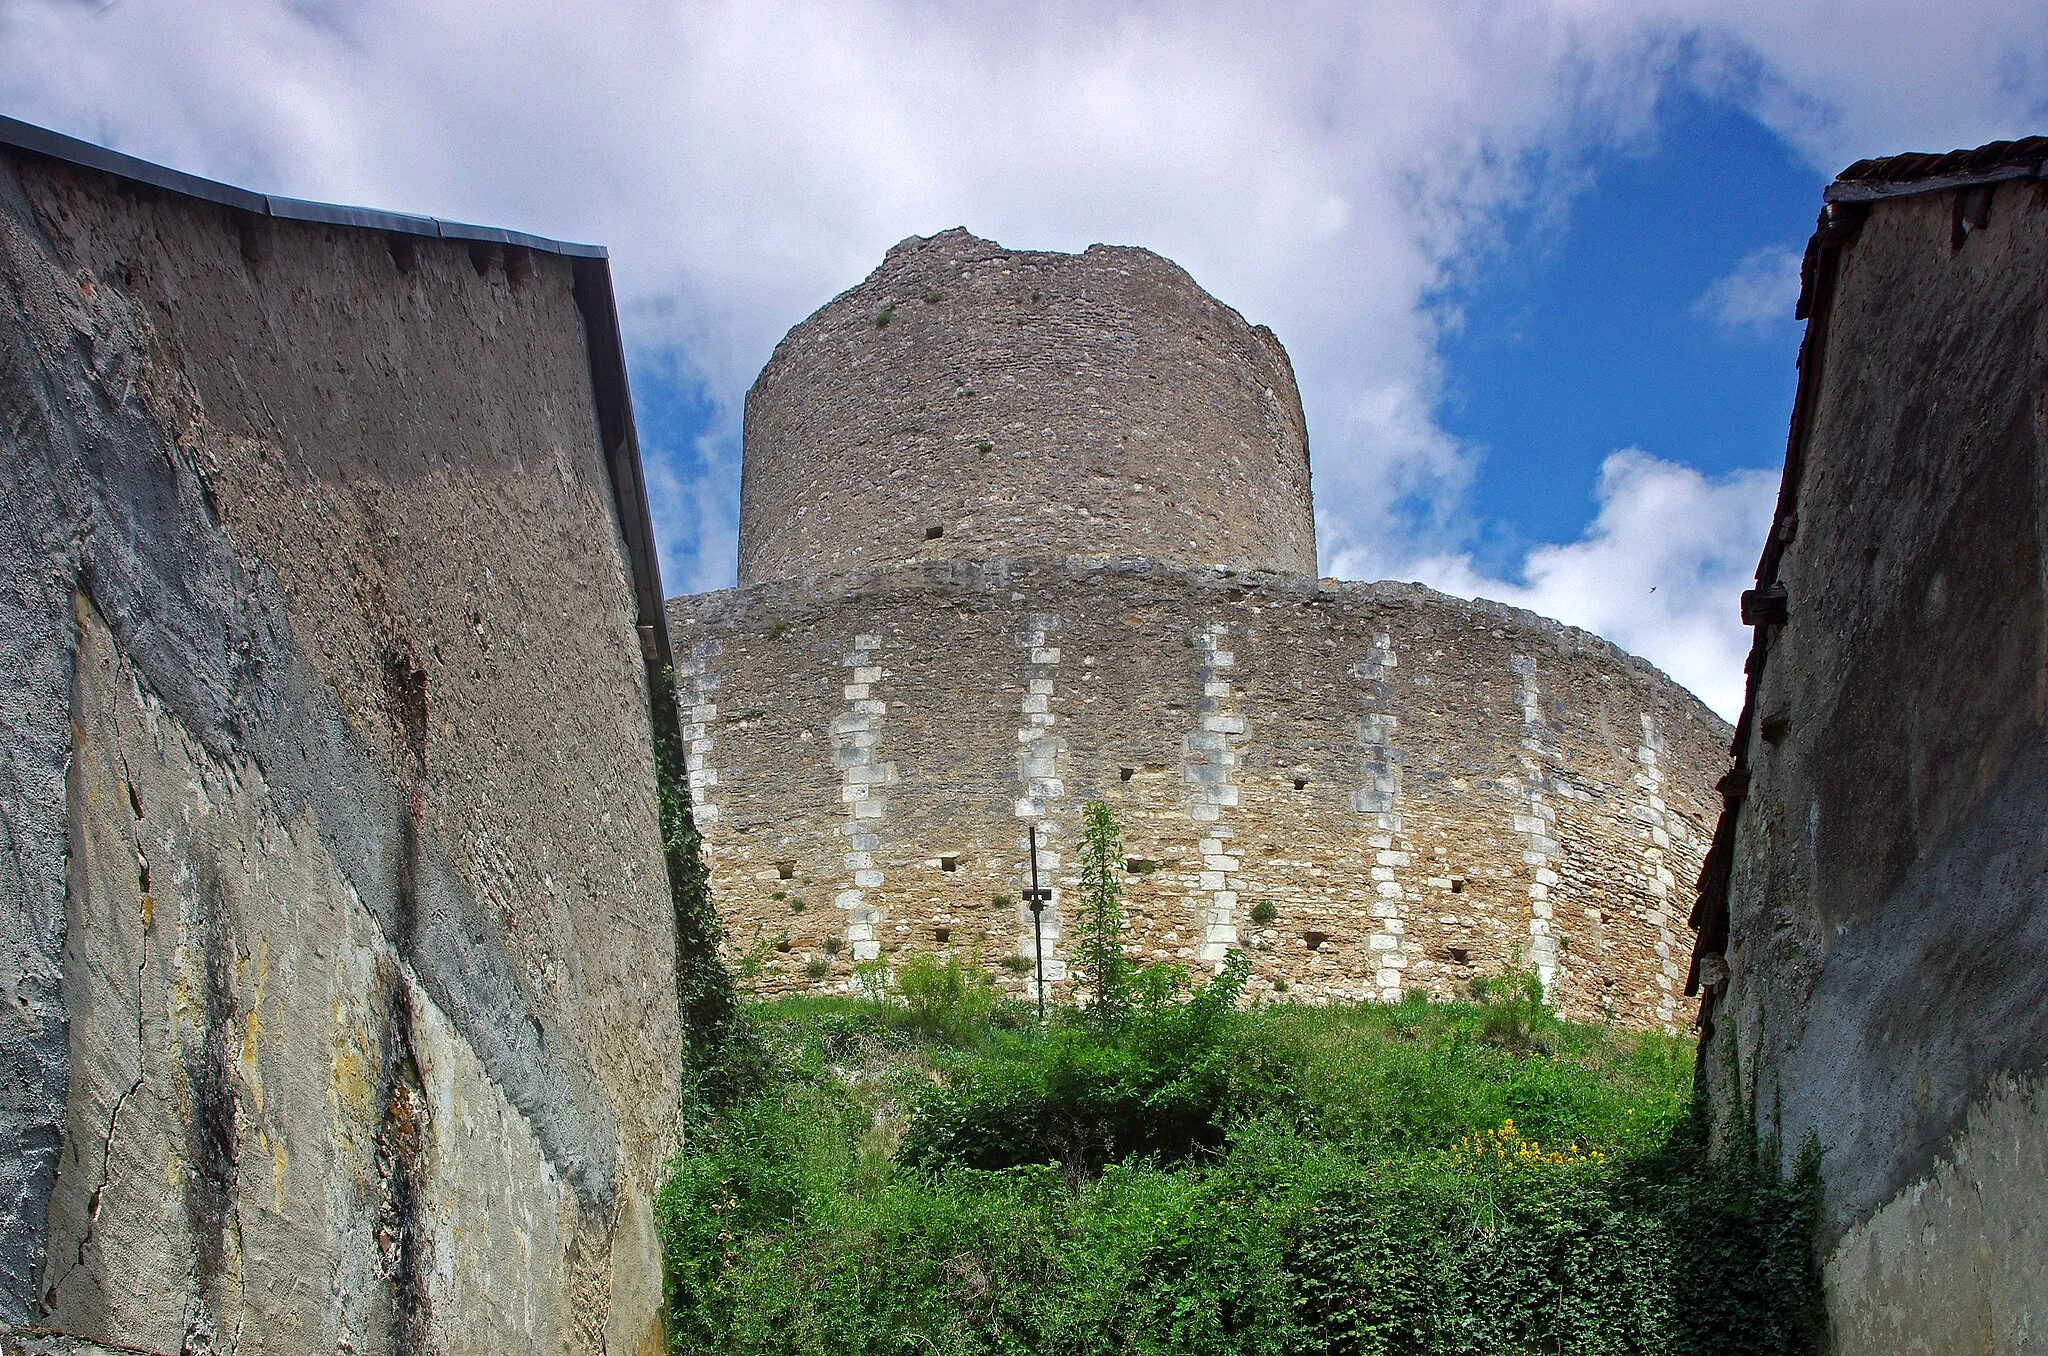 Photo showing: Châtillon-sur-Indre (Indre)
Le donjon (Tour de César) avec sa chemise.
Une chemise est un mur de protection, qui entoure une tour, un donjon ou un autre élément fortifié.
La Tour de César est le donjon d'un ancien château médiéval.
Ce genre de tour était un élément majeur de l'architecture militaire médiévale. On n'est ici pas très loin des limites de l'empire angevin, d'où la nécessité de surveiller les frontières.
Le donjon de Châtillon-sur-Indre est l'un des derniers vestiges d'un puissant château fort édifié sur ordre d'Henri II Plantagenêt vers 1160. Le château était en effet à la limite des domaines du roi de France et du roi d'Angleterre.
A la fin du XIIème siècle-début XIIIème, sous Philippe Auguste, le château entre dans le domaine du roi de France
En avril 1205, Philippe Auguste cédera le château, à titre provisoire, à Dreu de Mello, fils du connétable* de France Dreu III (ou IV) de Mello*.
A la mort, sans postérité, de Dreu de Mello, en 1249, les héritiers contesteront le retour du domaine dans le domaine royale. Après marchandage, le neveu de Dreu de Mello recevra 600 livres de rente pour renoncer à Châtillon et Loches. Ces 600 livres seront inscrites sur la recette des prévôtés et baillages*.
En septembre 1274, le roi Philippe III (Philippe le Hardi) donne le château à son Grand Chambellan*, Pierre de La Brosse*. Pierre de la Brosse qui ne possédera le château que jusqu'en 1278, pour cause de pendaison suite à une présumée trahison au profit d'Alphonse de Castille.
Pendant les XIIIème et XIVème siècles, le château  ne voit que le séjour temporaire et occasionnel du roi. Philippe III y séjournera du 26 a 30 novembre 1283; Philippe IV en mai 1289, août 1305 et février 1307; Jean II à l'hiver 1346.
Le château fait partie du duché de Touraine quand Louis d'Amboise en fait une prison en 1432.
La château quittera et retrouvera le domaine royal à plusieurs reprises. Au moment de la Révolution, la terre de Châtillon est dans la famille Amelot.
Tel qu'il se présente avec sa tour cylindrique qui culmine à 30 mètres, entourée d'un rempart de protection sur une motte calcaire rehaussée, c'est l'un des plus ancien de France. Au 19ème siècle, le château est découpé en parcelles. Le donjon et sa chemise seront donnés à la commune. La commune utilisera le donjon commle château d'eau en 1932.

Le connétable, "comes stabuli", comte de l'étable, est à l'origine chargé des écuries, donc des chevaux de guerre. Le connétable de France sera le chef des armées. Ici, il s'agit probablement de Dreu III (ou IV) de Mello, mort en 1218,  châtelain de Loches et Châtillon. Le châtelain n'est pas propriétaire du château, c'est souvent le commandant de la place. Son fils, Dreu de Mello, sera seigneur, donc propriétaire de Châtillon. Dreu III (ou IV) de Mello accompagna Philippe Auguste en Terre Sainte lors de la troisième croisade. Le roi le récompensera avec la charge de connétable et les châtellenies de Loches et Châtillon. Il décèdera le 3 mars 1218 à l'âge de 80 ans. Il aura trois enfants, Guillaume qui deviendra Guillaume Ier de Mello seigneur de Saint-Bris, Dreu de Mello qui sera seigneur de Loches et Châtillon, et Agnès qui sera mariée à Garnier III de Traînel, seigneur de Marigny. Prévôtés et bailliages sont des circonscriptions administratives et judiciaires. Le Grand Chambellan de France, très proche du roi, pourrait être comparé au premier ministre actuel. Pierre de la Brosse commence sa fortune comme barbier, et donc chirurgien, de Saint Louis. Le roi dut être content de ses services, puisqu'il en fit un châtelain et le nomma chambellan. Philippe, le fils du roi, le futur Philippe III dit le Hardi, fut également séduit par le personnage. Pierre de la Brosse accompagnera Saint Louis dans la huitième croisade, croisade où le roi trouvera la mort, de dysenterie, à Tunis (Lors de cette croisade, mourront également le fils aîné du roi et Isabelle d'Aragon). Philippe III succéda donc à son père et fit entière confiance à Pierre de la Brosse qu'il nomma Grand Chambellan de France. Pierre de la Brosse profita de cette promotion et de la confiance du roi pour placer toute sa famille en particulier grâce à des alliances matrimoniales avantageuses. Cette rapide ascension sociale d'un individu de petite noblesse (et non de basse extraction comme le prétendirent les jaloux), lui attira de nombreuses inimitiés chez les grands. Surtout, ceux-ci ne supportent pas d'être obligés de ramper à ses pieds pour bénéficier des libéralités royales. Le 21 août 1274, Philippe III épouse en secondes noces Marie de Brabant (sa première épouse, dont il aura quatre fils, Isabelle d'Aragon, était morte en Calabre, enceinte, au retour de la huitième croisade). Marie, prit ascendant sur le roi, ce qui causa bientôt de l'ombrage à l'ancien barbier. 
En mai 1276, le prince héritier Louis, issu du premier mariage, mourut subitement, à l'âge de 12 ou 13 ans. Des insinuations diffusées par Pierre de La Brosse, laissèrent entendre que le jeune Louis avait été empoisonné par sa belle-mère, Marie de Brabant, dans le dessein d'éliminer successivement les fils d'Isabelle d'Aragon et de promouvoir sa descendance. "En lan de grace mil CC.LXXVI. avint que Loys le premier filz le roy Phelippe mourut et fu empoisonné si comme aucuns dient. Le roy en fu en soupecçon, et ceste souspecçon mist en son cuer Pierre de la Broche, son maistre chambellenc".(Guillaume de Nangis, moine de Saint Denis mort en 1300 -"Gesta Philippi Tertia Francorum Regis")
La reine accuse à son tour le chambellan Pierre de la Brosse de manipulation. Pour se tirer d'affaire, il tenta, par l'intermédiaire de son cousin évêque de Bayeux, de suborner une béguine de Liège qui prétendait avoir des révélations à faire sur la mort du jeune Louis. L'évêque lui demanda de dire que la mort du jeune prince était due à la "clique brabançonne" qui entourait la reine. Mais l'évêque de Liège interrogea la béguine et révéla la supercherie. Toutefois, le roi hésitait encore à désavouer son favori et à innocenter sa femme. Il en fallait plus. Les "grands" trouvèrent : on l'accusa d'être à l'origine d'un revirement soudain du roi dans la campagne de Castille, suite à une manipulation. Pierre de la Brosse fut donc arrêté en janvier 1278 pour haute trahison. On l'éloigna de la capitale, à Janville(Eure-et-Loire), certainement pour que le roi ne puisse le sauver. Pierre de La Brosse fut jugé par les "grands", dont certains étaient d'ailleurs ses débiteurs,  et non par des gens de loi, et pendu le 30 juin 1278 au gibet de Montfaucon.

"(...) Quant les barons furent assemblez, Pierre fu tantost délivré au bourrel de Paris qui pent les larrons, à bon matin au soleil levant. Si le convoièrent au gibet, le duc de Bourgoingne; le duc de Breuban; le conte d'Artois, et plusieurs autres nobles barons. (...) Le bourrel lui mist la corde autour le col, et lui demanda s'il vouloit riens plus dire; et il dist que nennin; et tantost le bourel osta l'eschiele et le laissa aller entre les larrons."